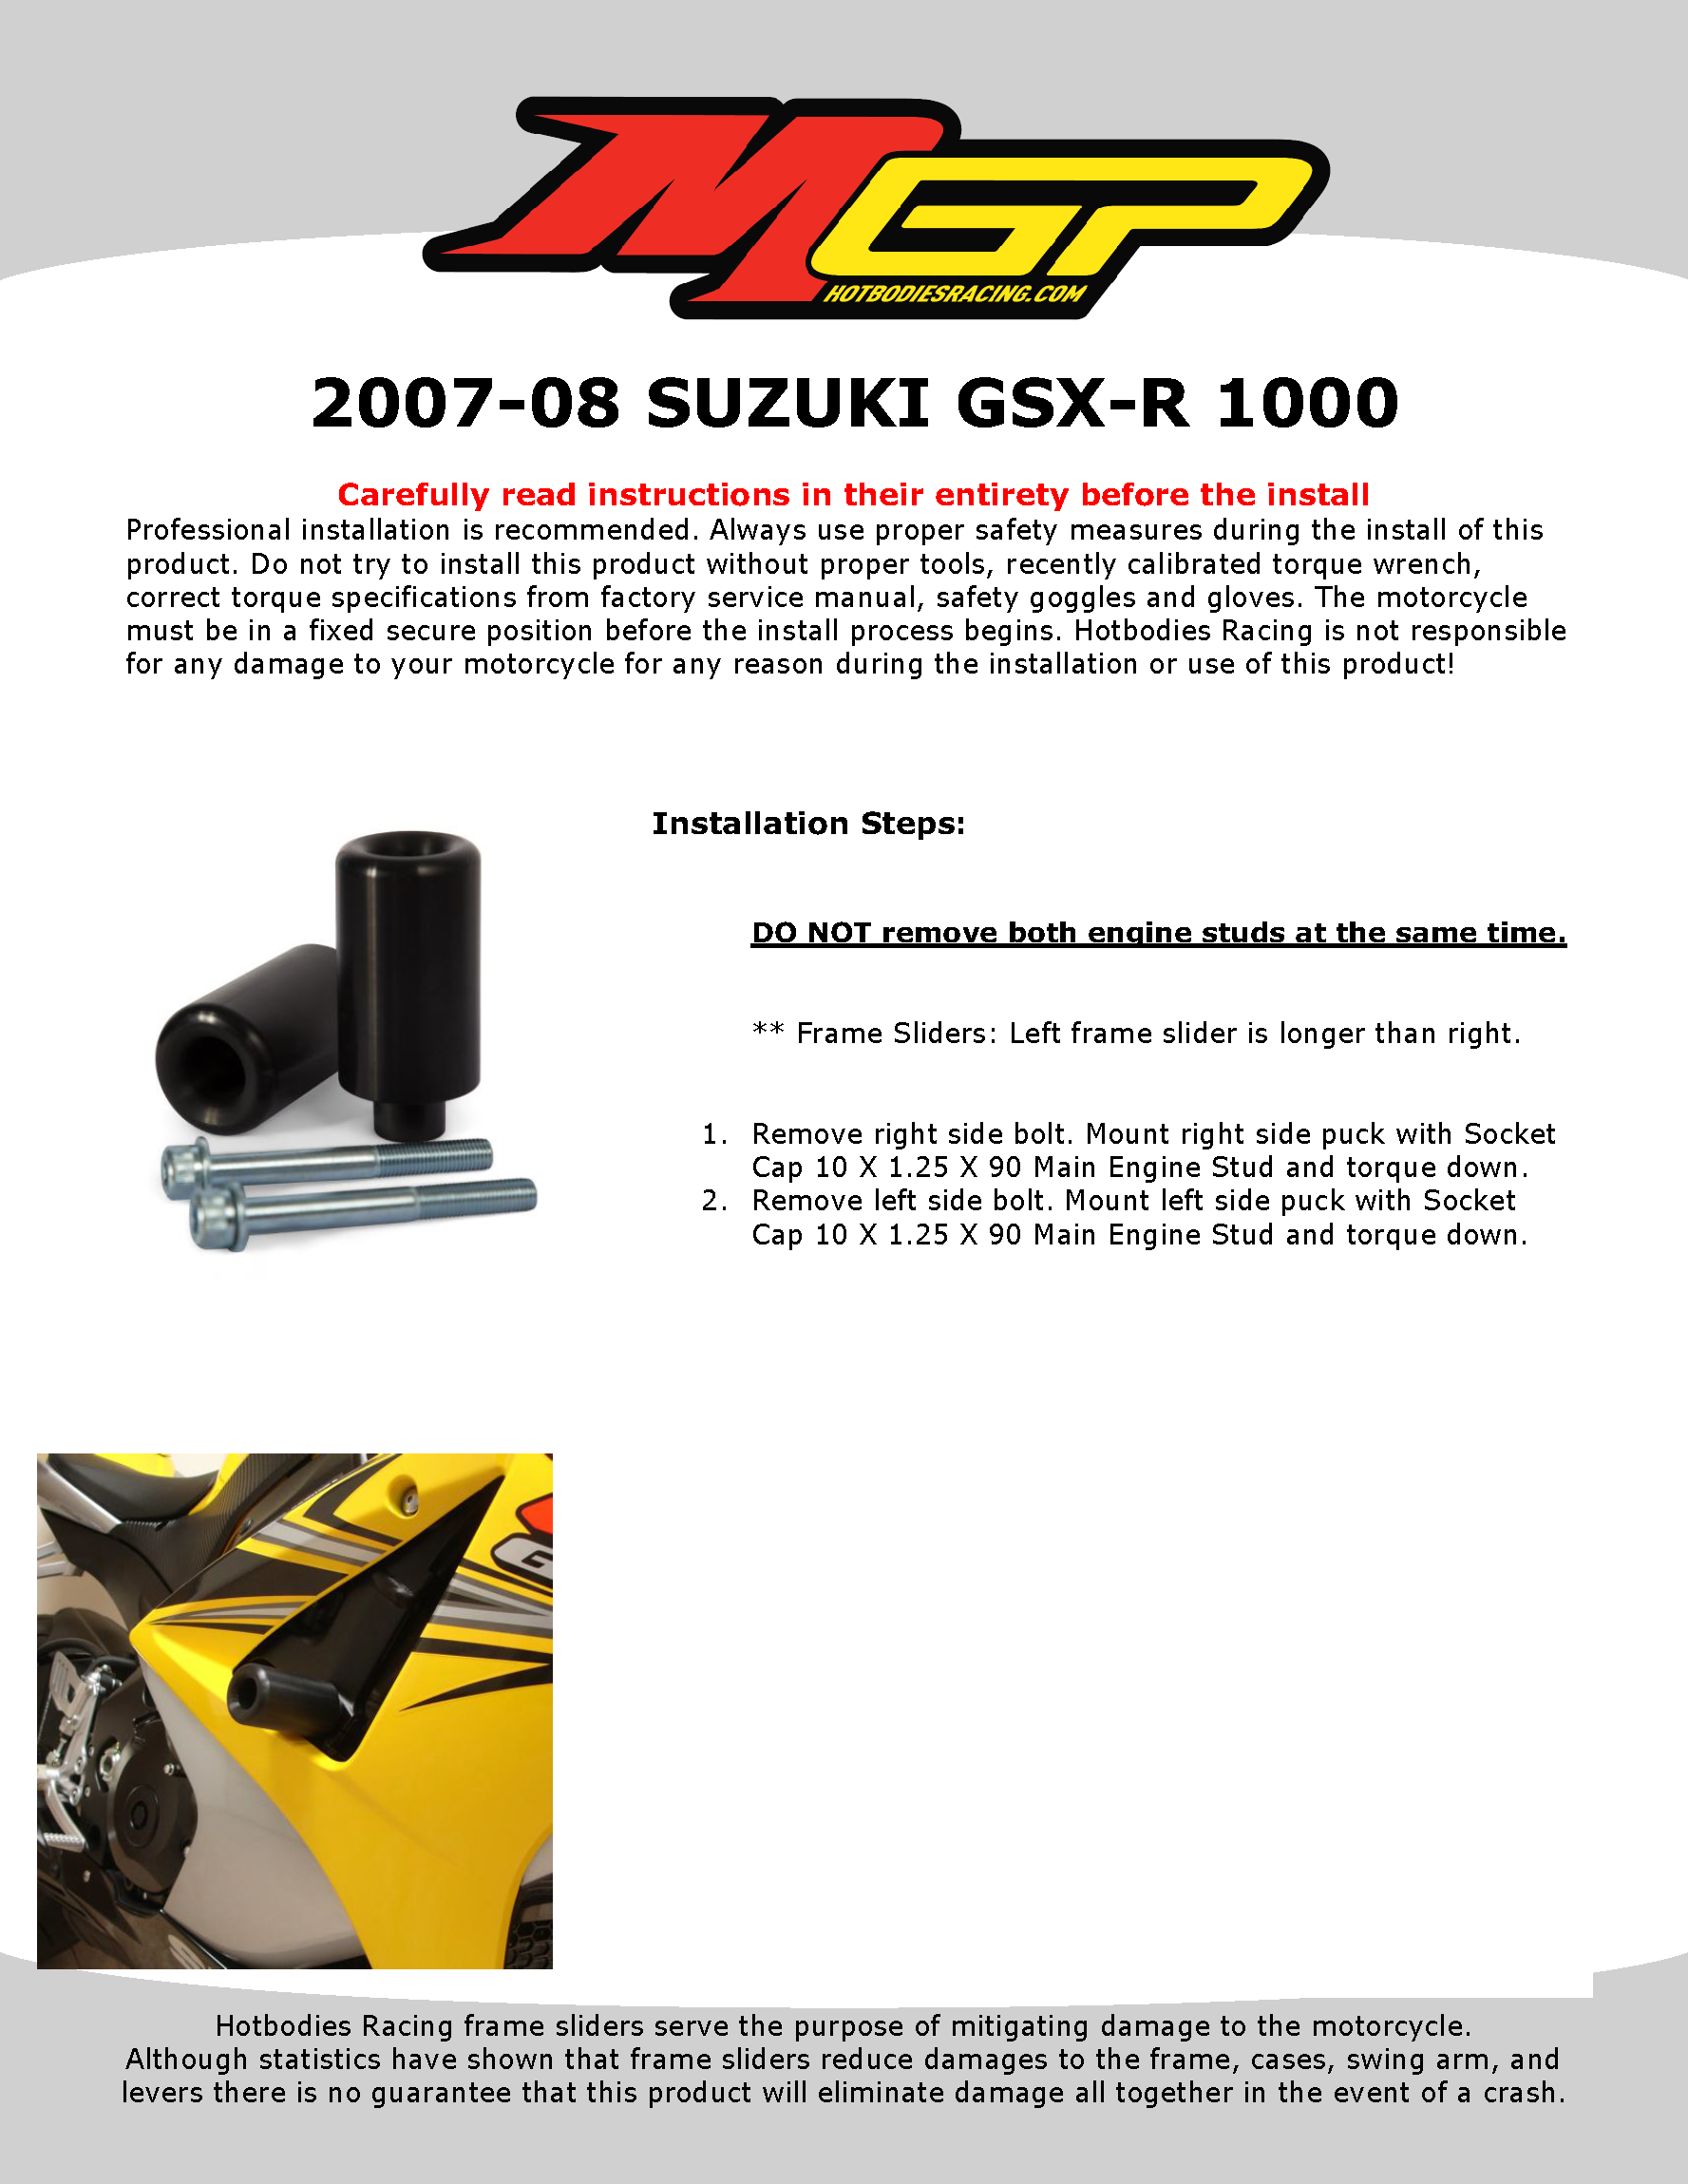 

2007-08 SUZUKI GSX-R 1000

